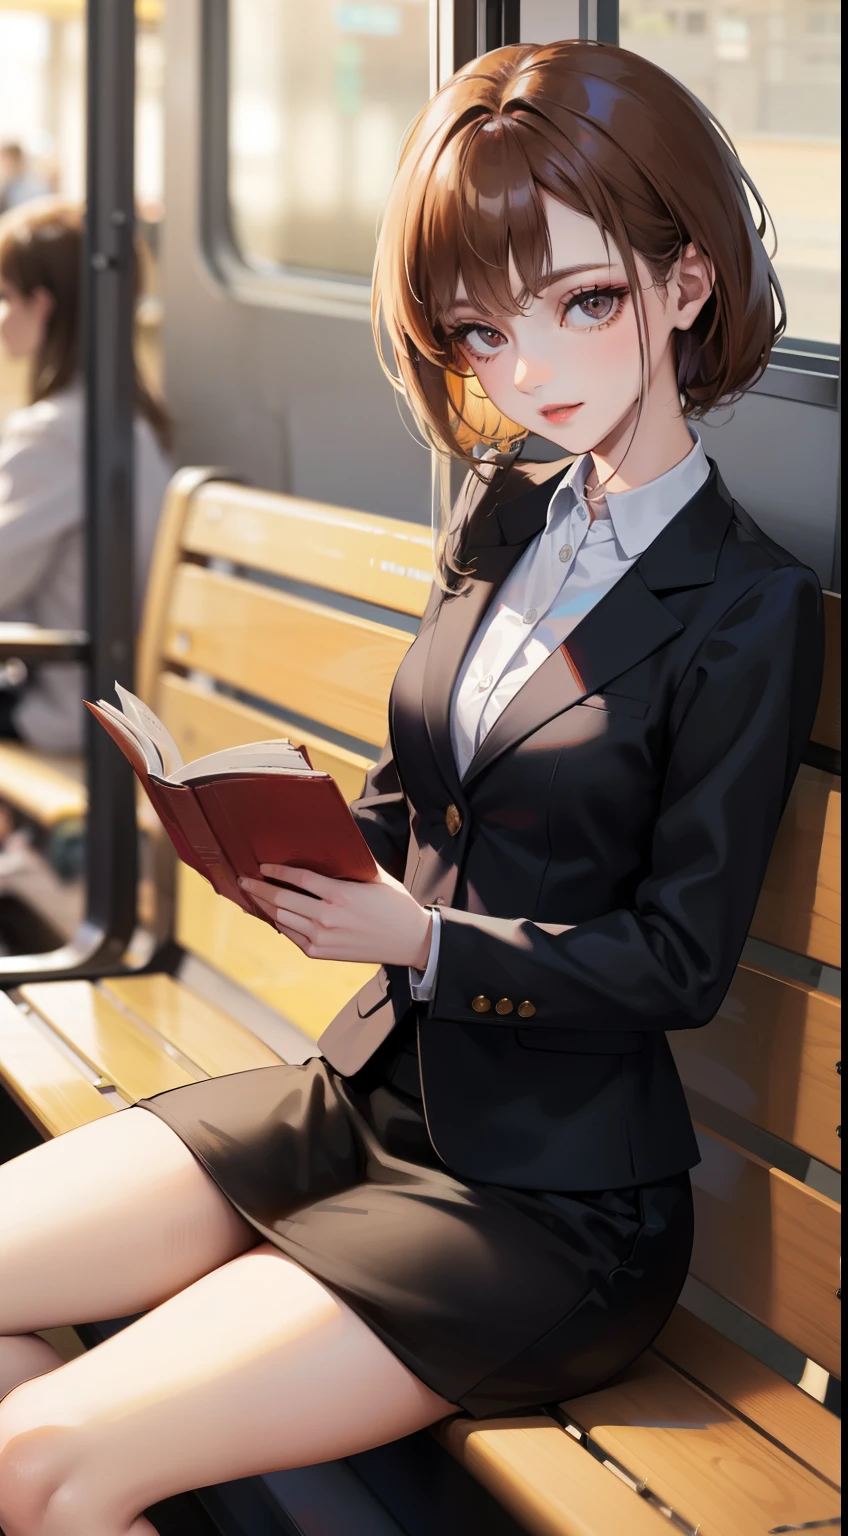 Uma adorável mulher de 35 anos, de terno e saia justa, está sentada em um banco horizontal de madeira na estação de trem e lendo um livro. Abra um pouco as pernas e olhe a parte interna das coxas de frente.